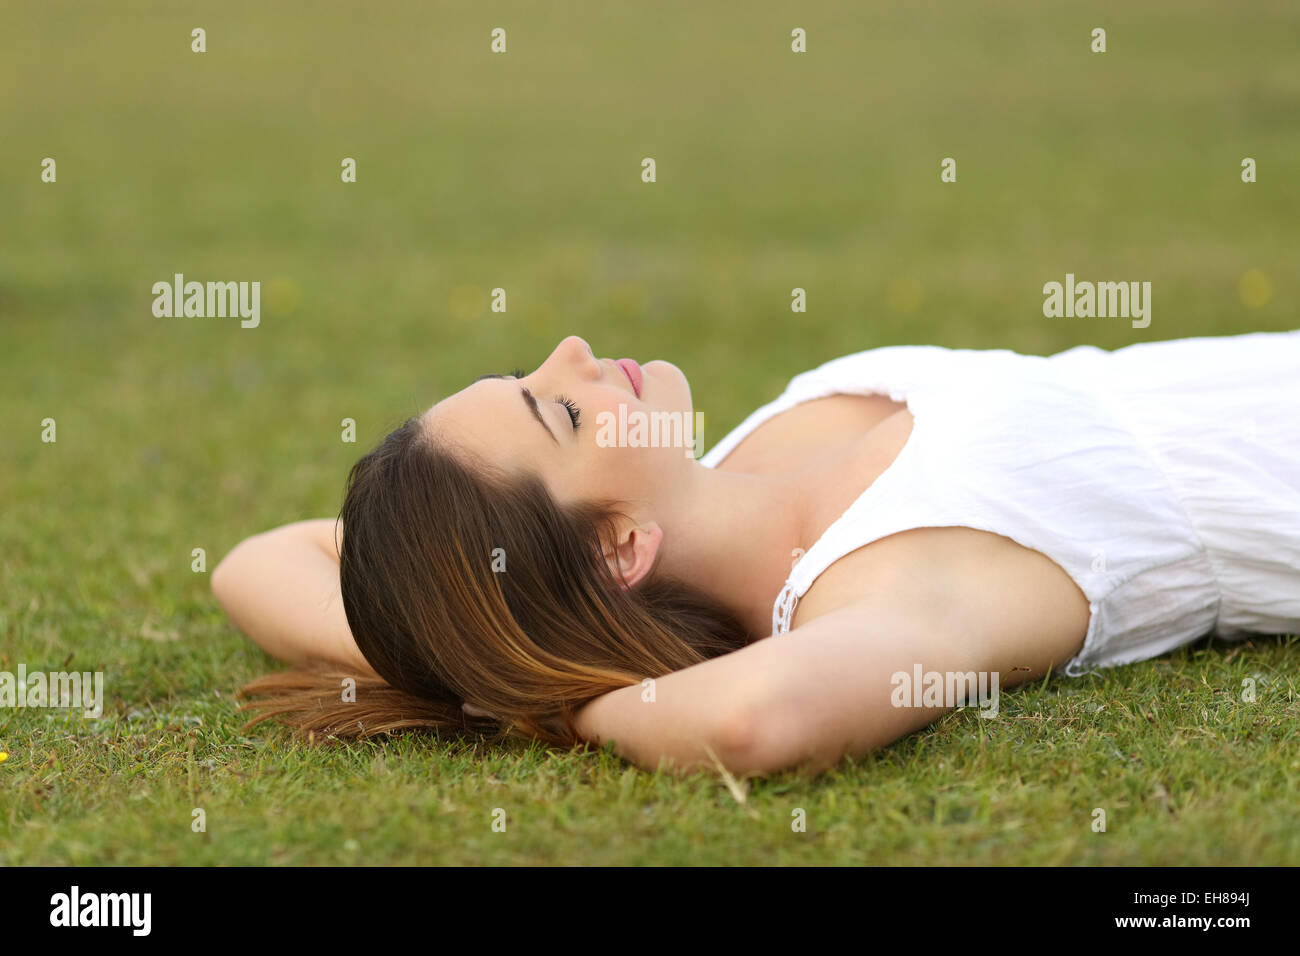 Entspannte Frau liegt auf dem Rasen schlafen in eine ruhige Szene mit einem grünen Hintergrund Stockfoto